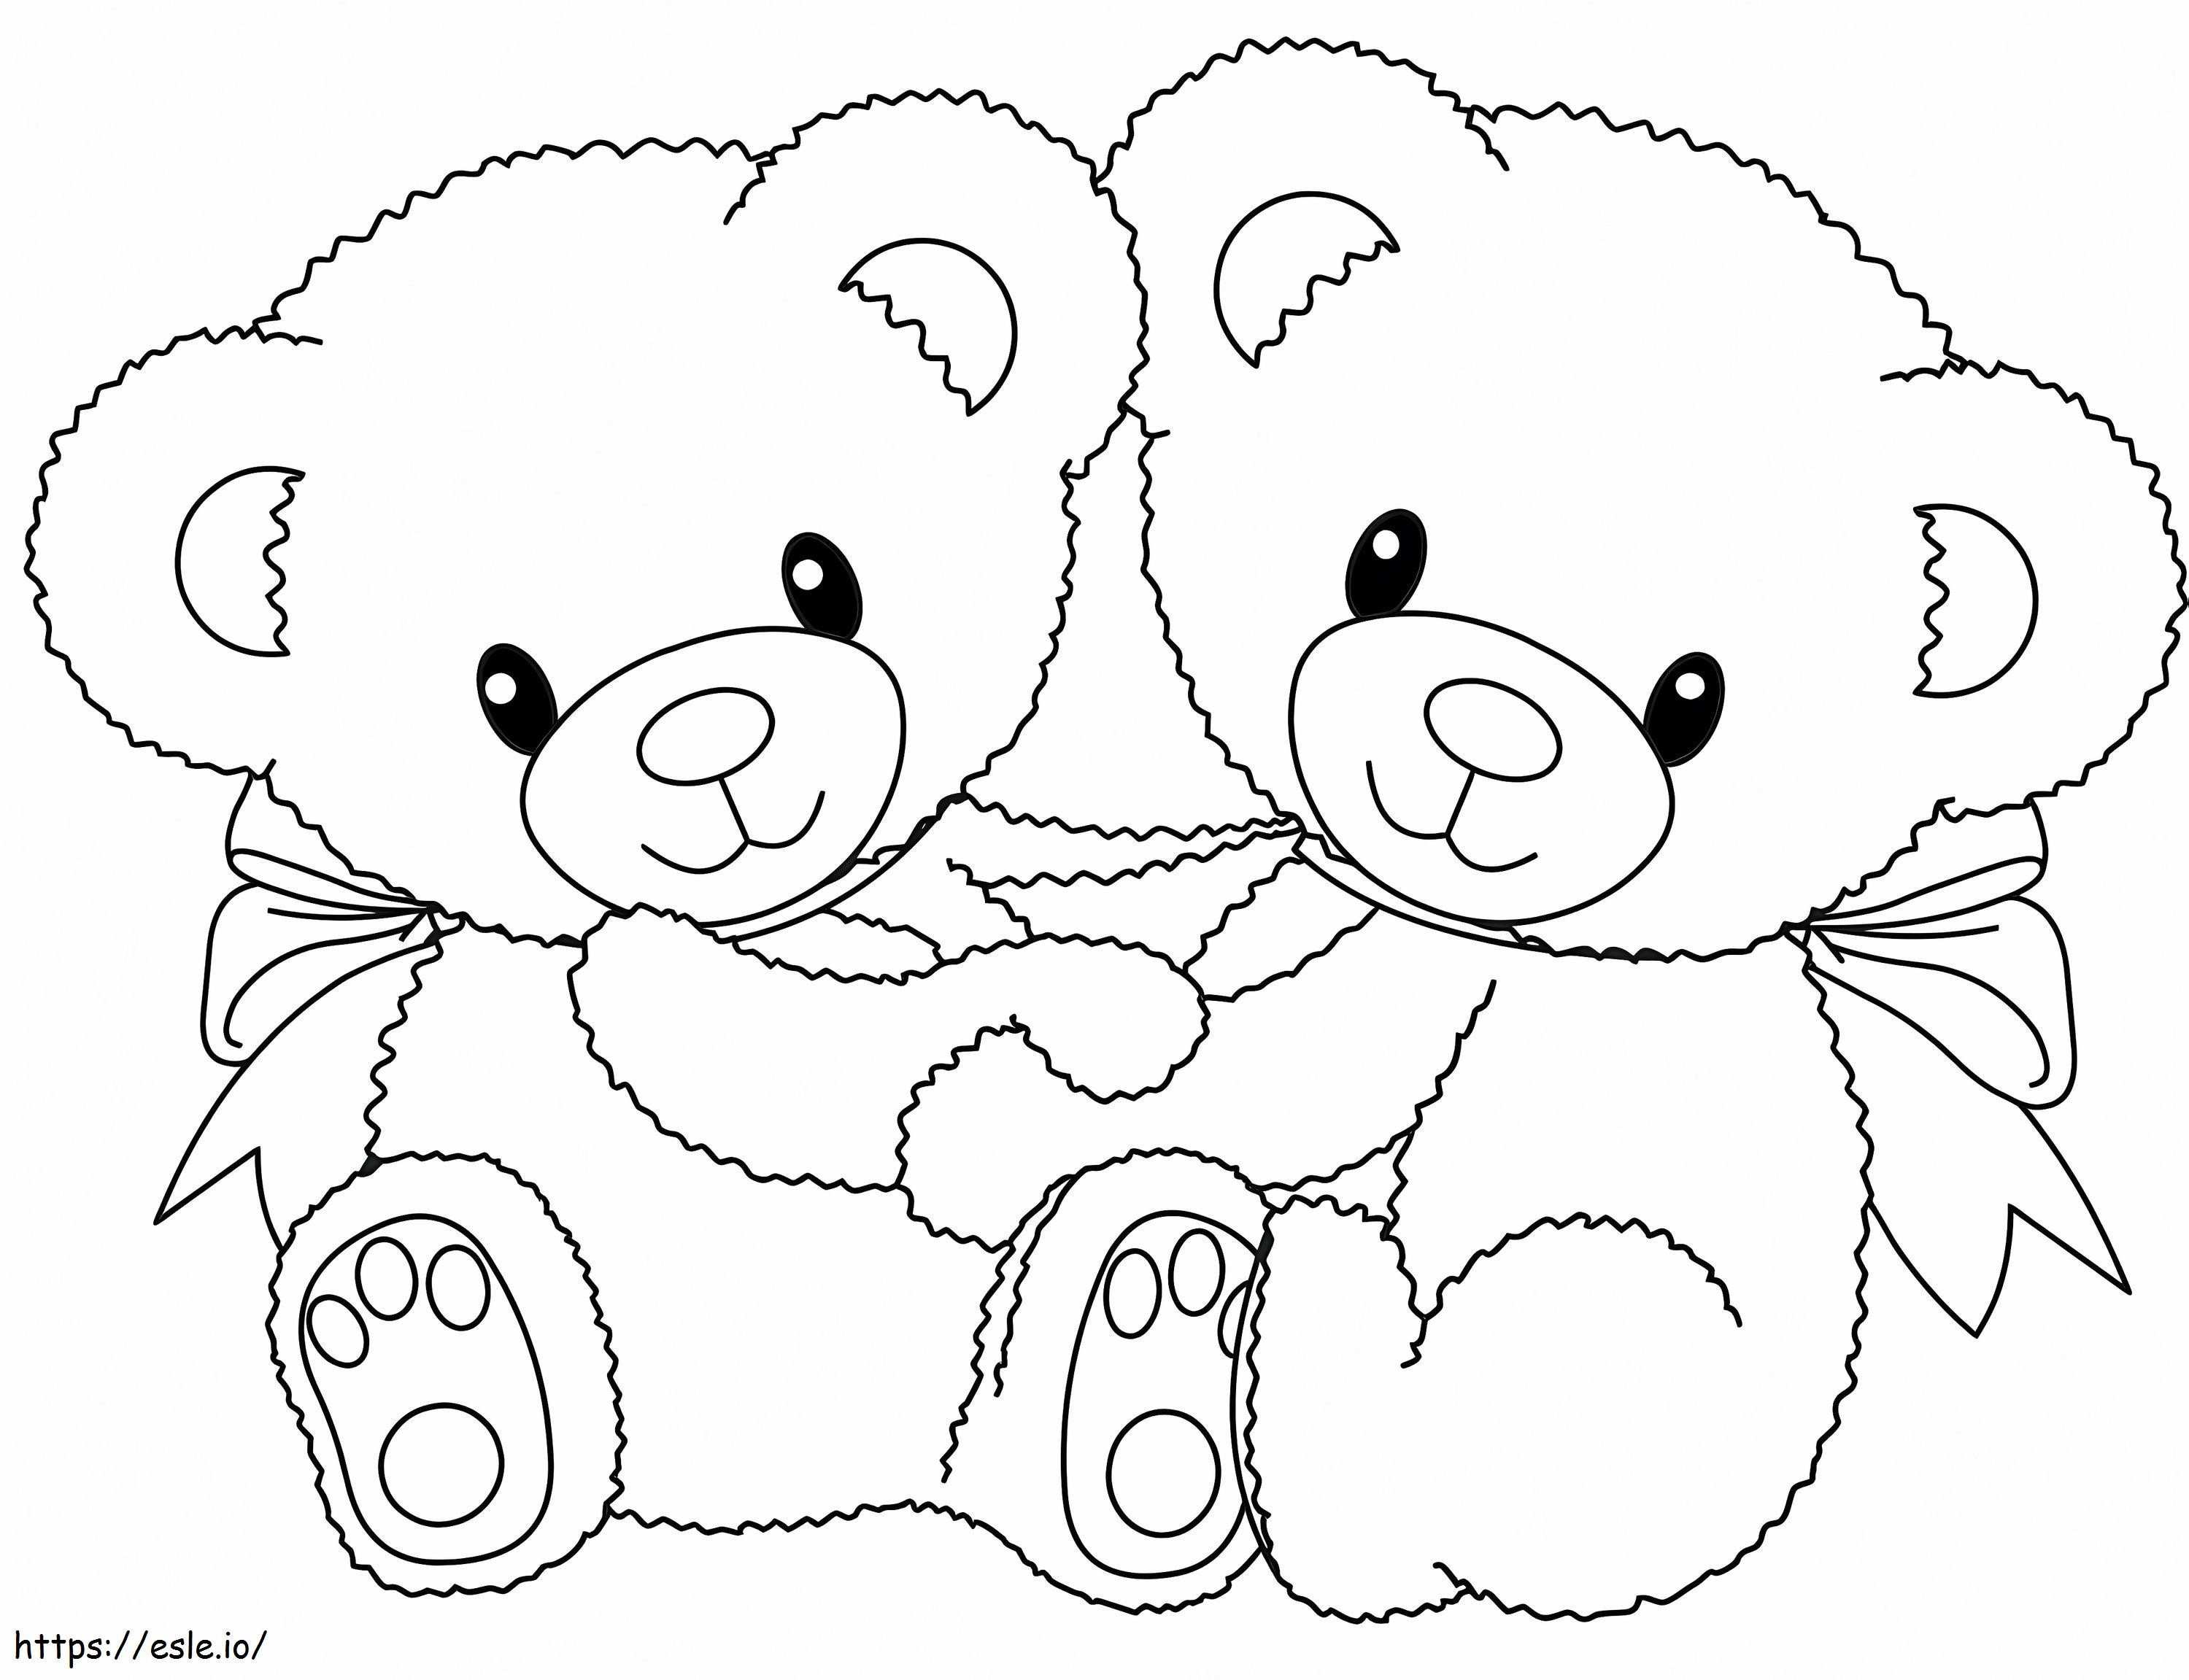 Süße Teddybären ausmalbilder